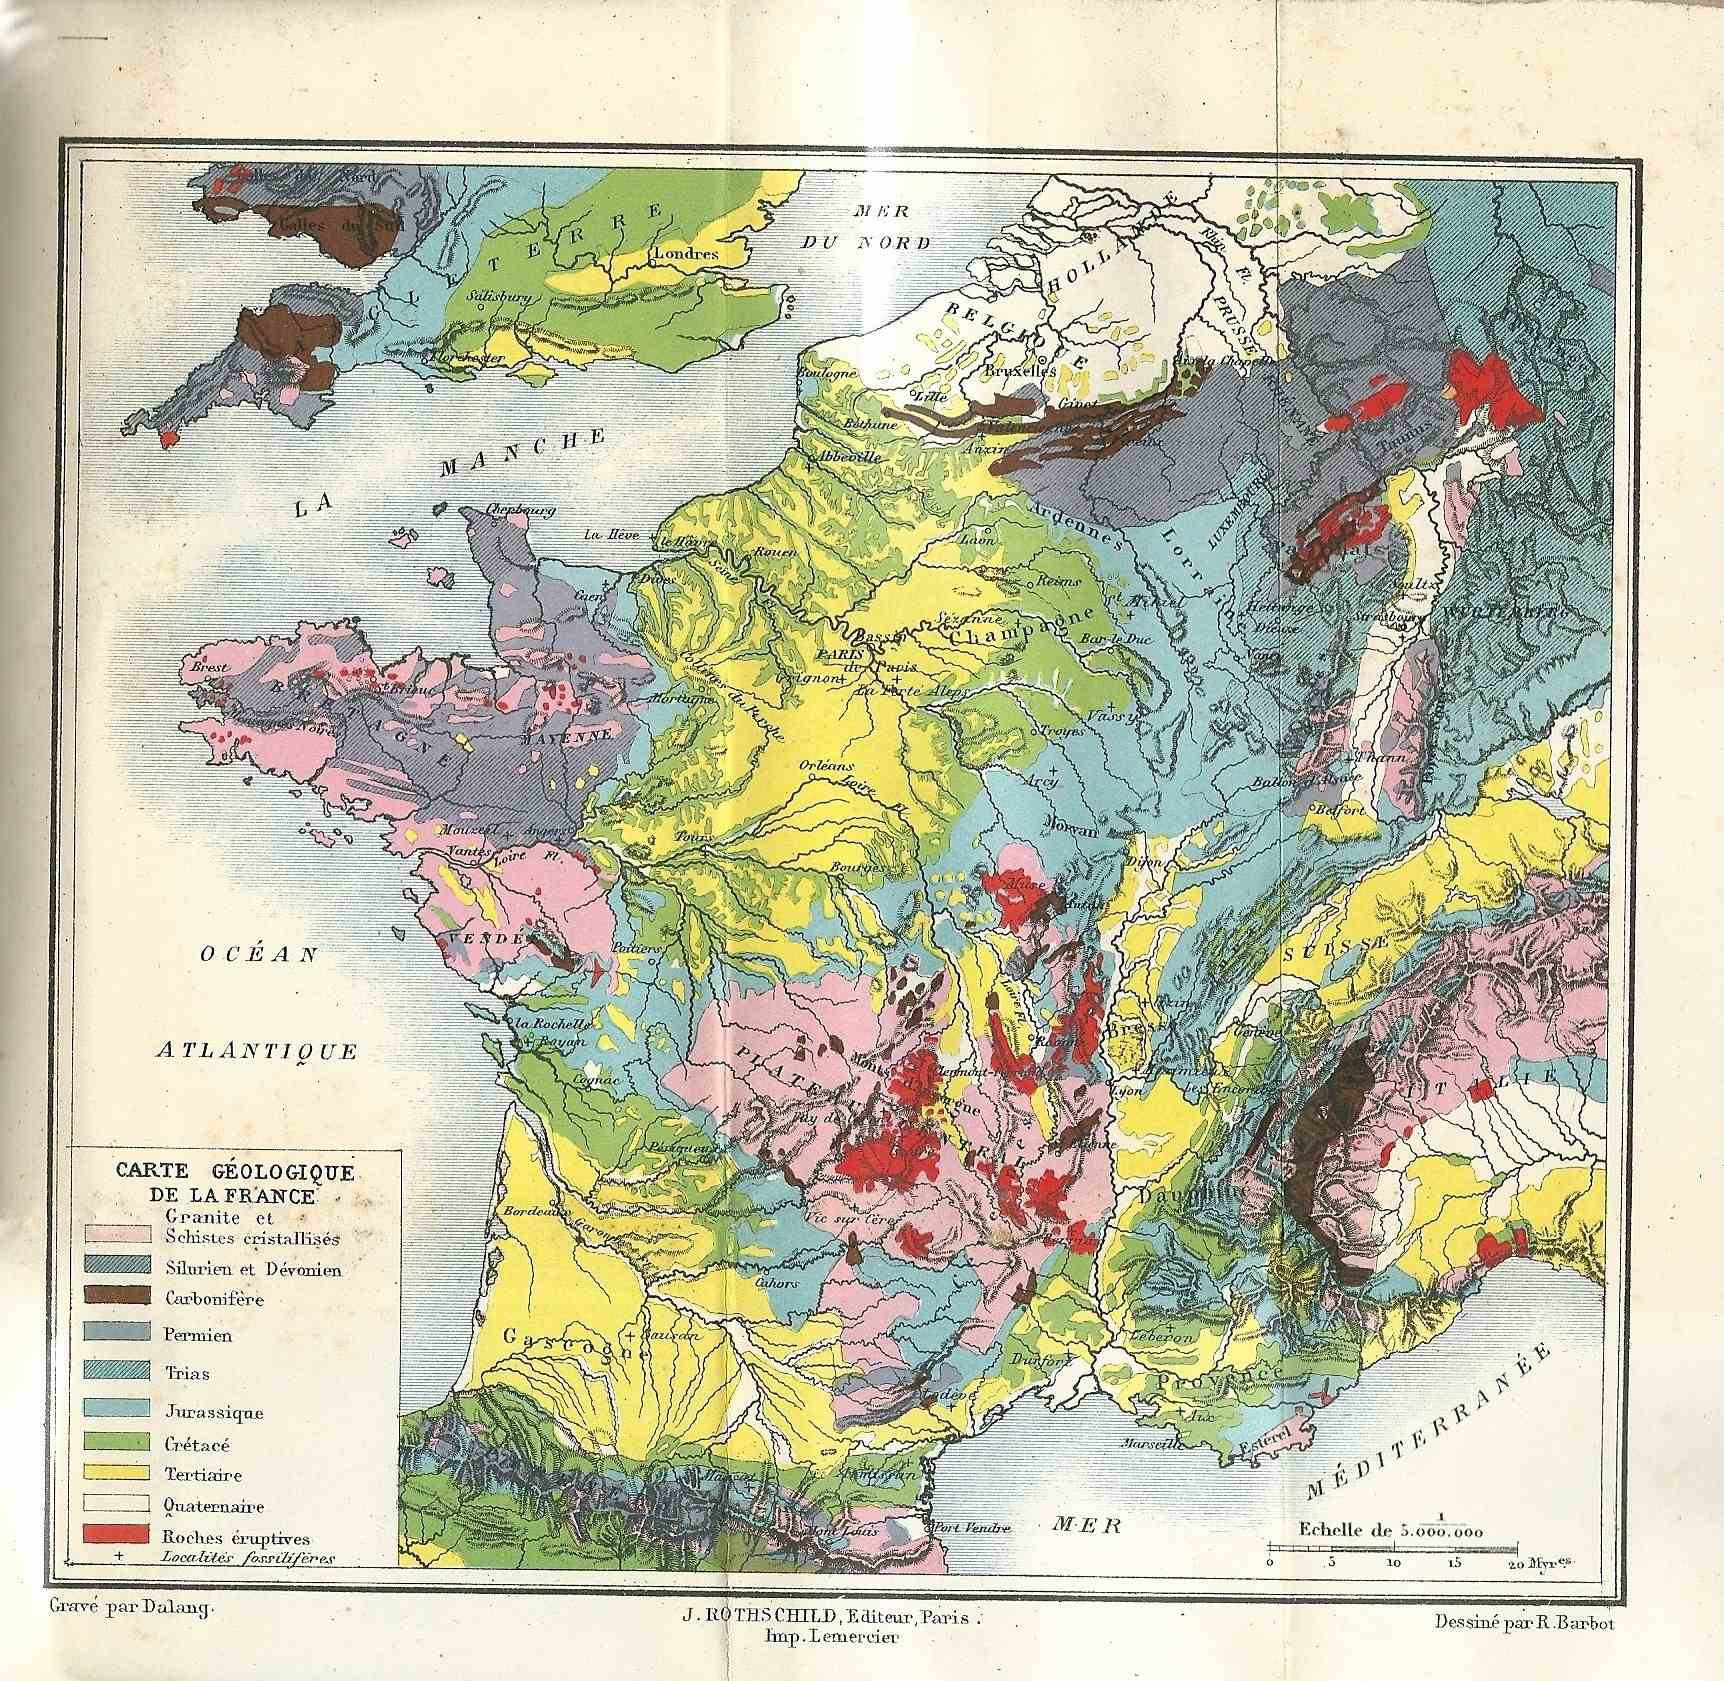 File:carte Géologique De La France - Wikimedia Commons concernant Carte De France Grand Format